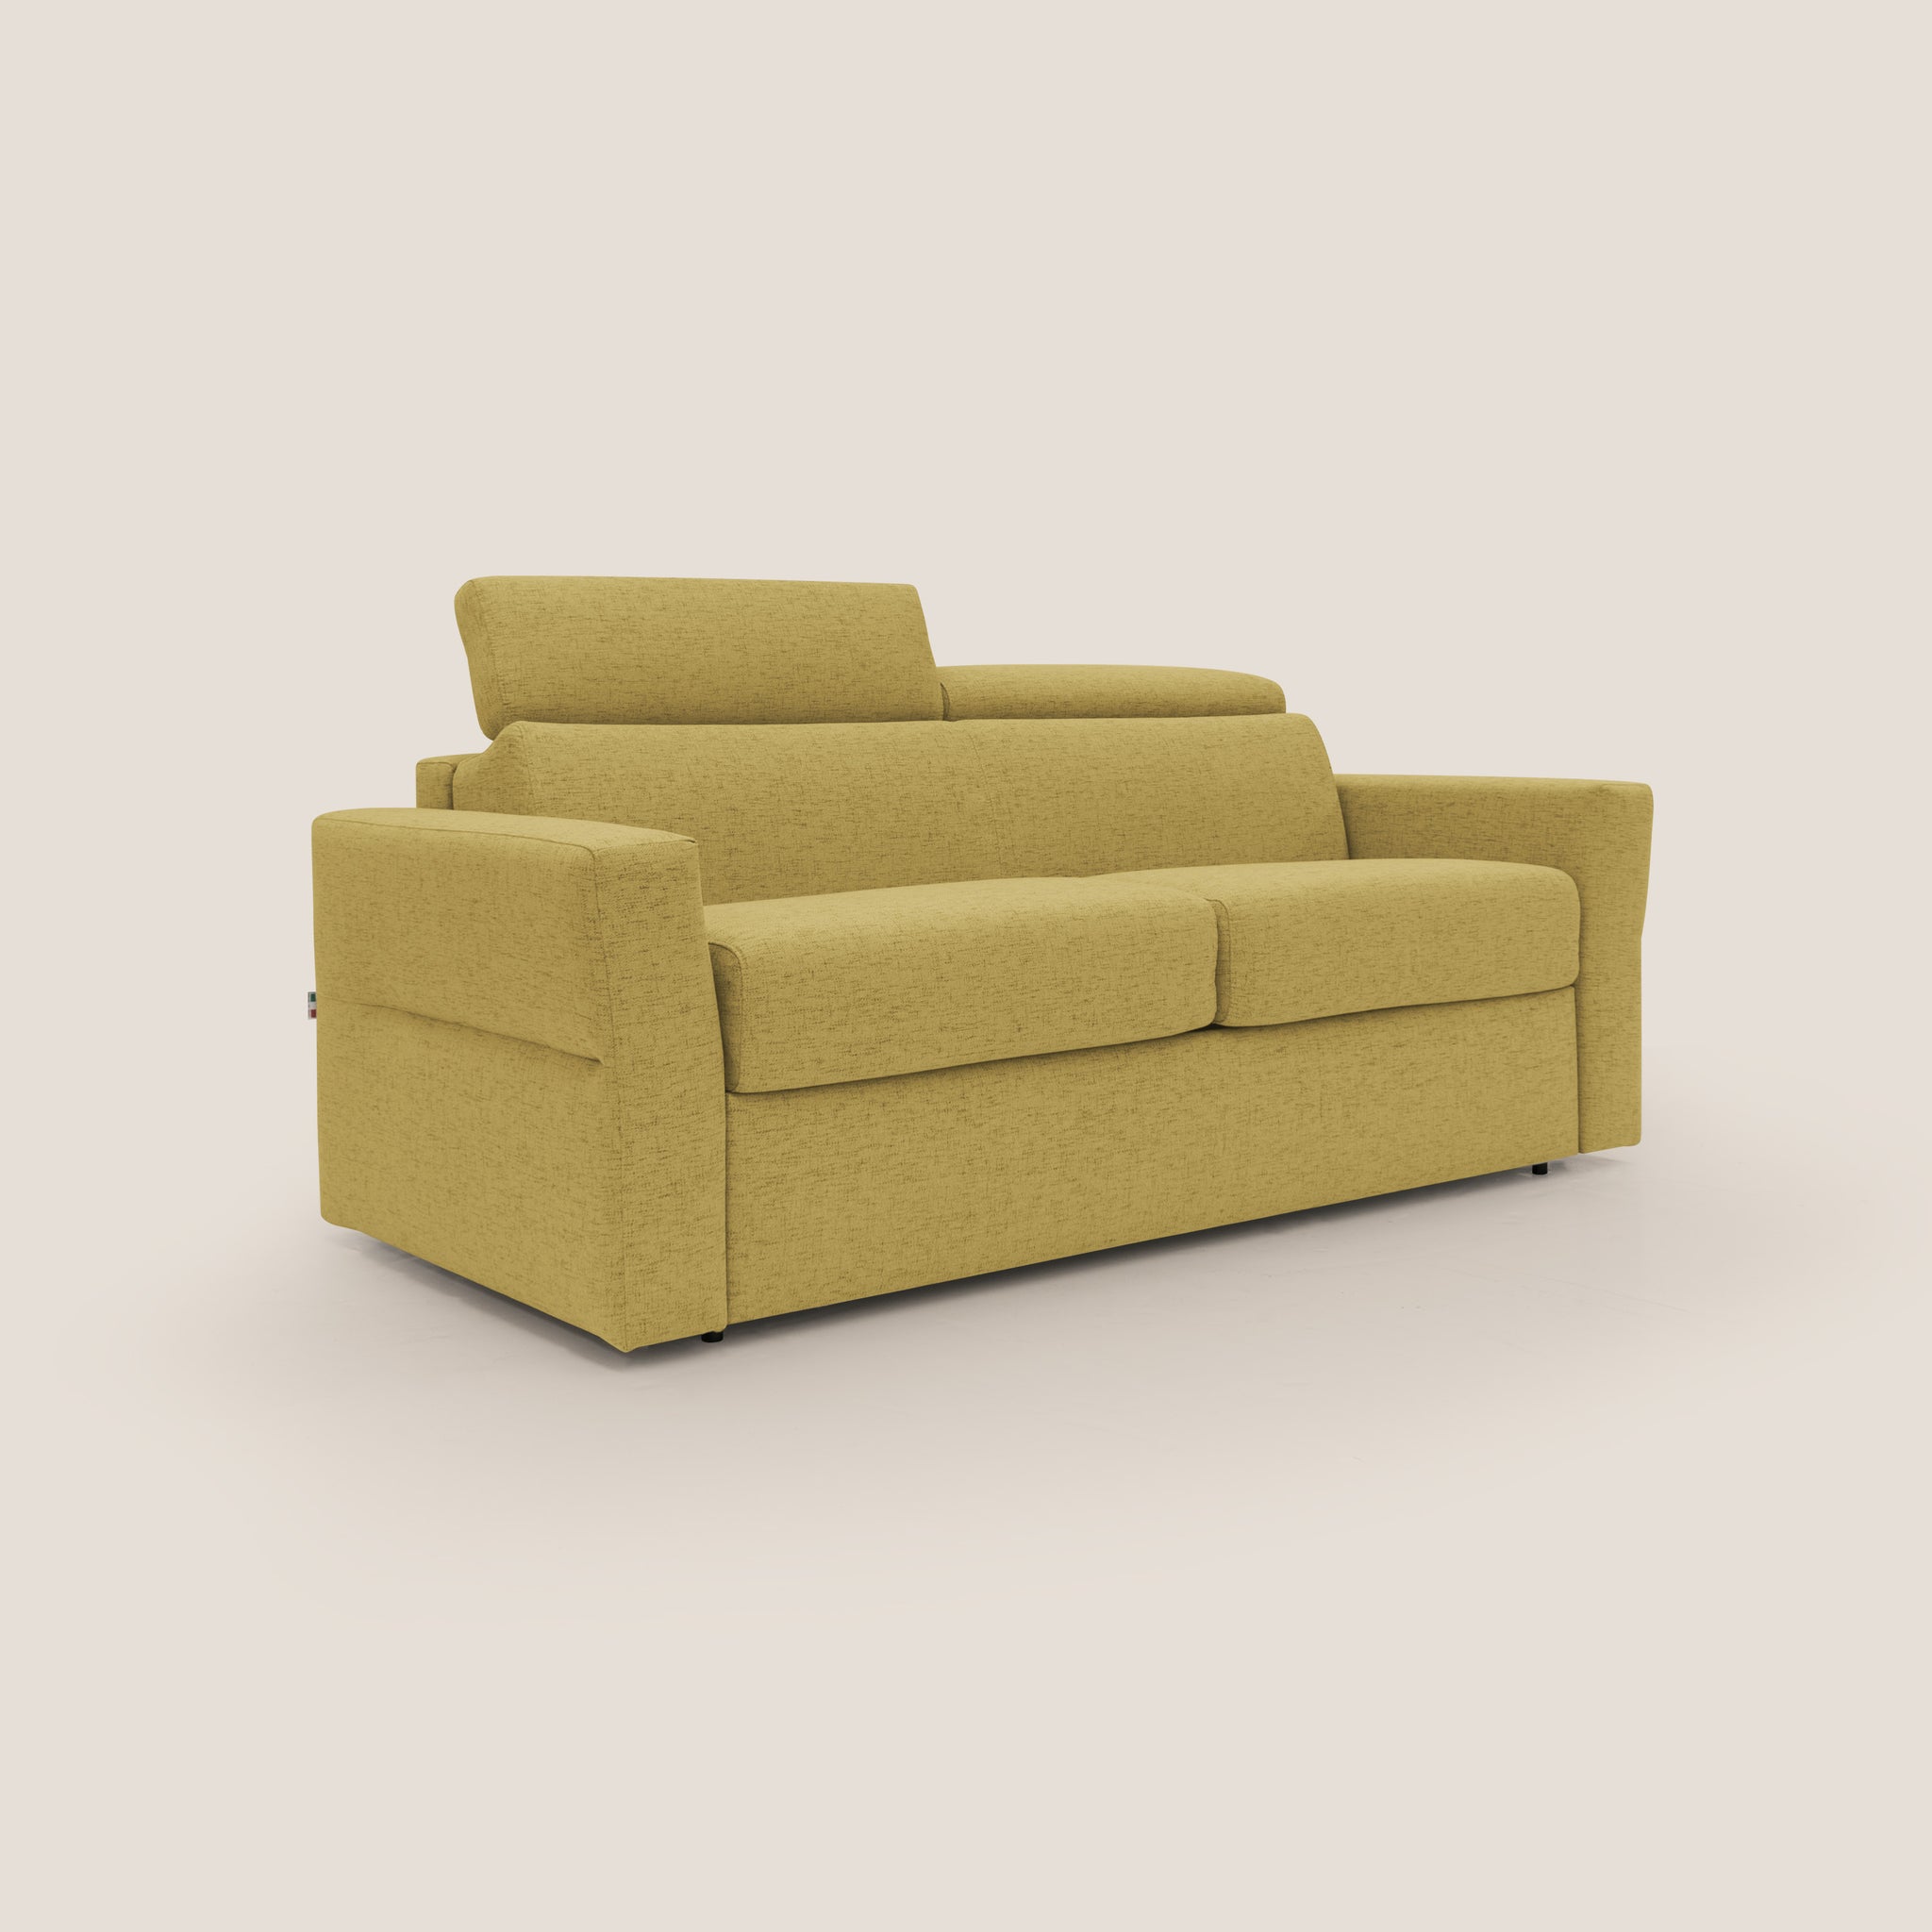 Avalon divano letto con materasso 18 cm in tessuto impermeabile T03